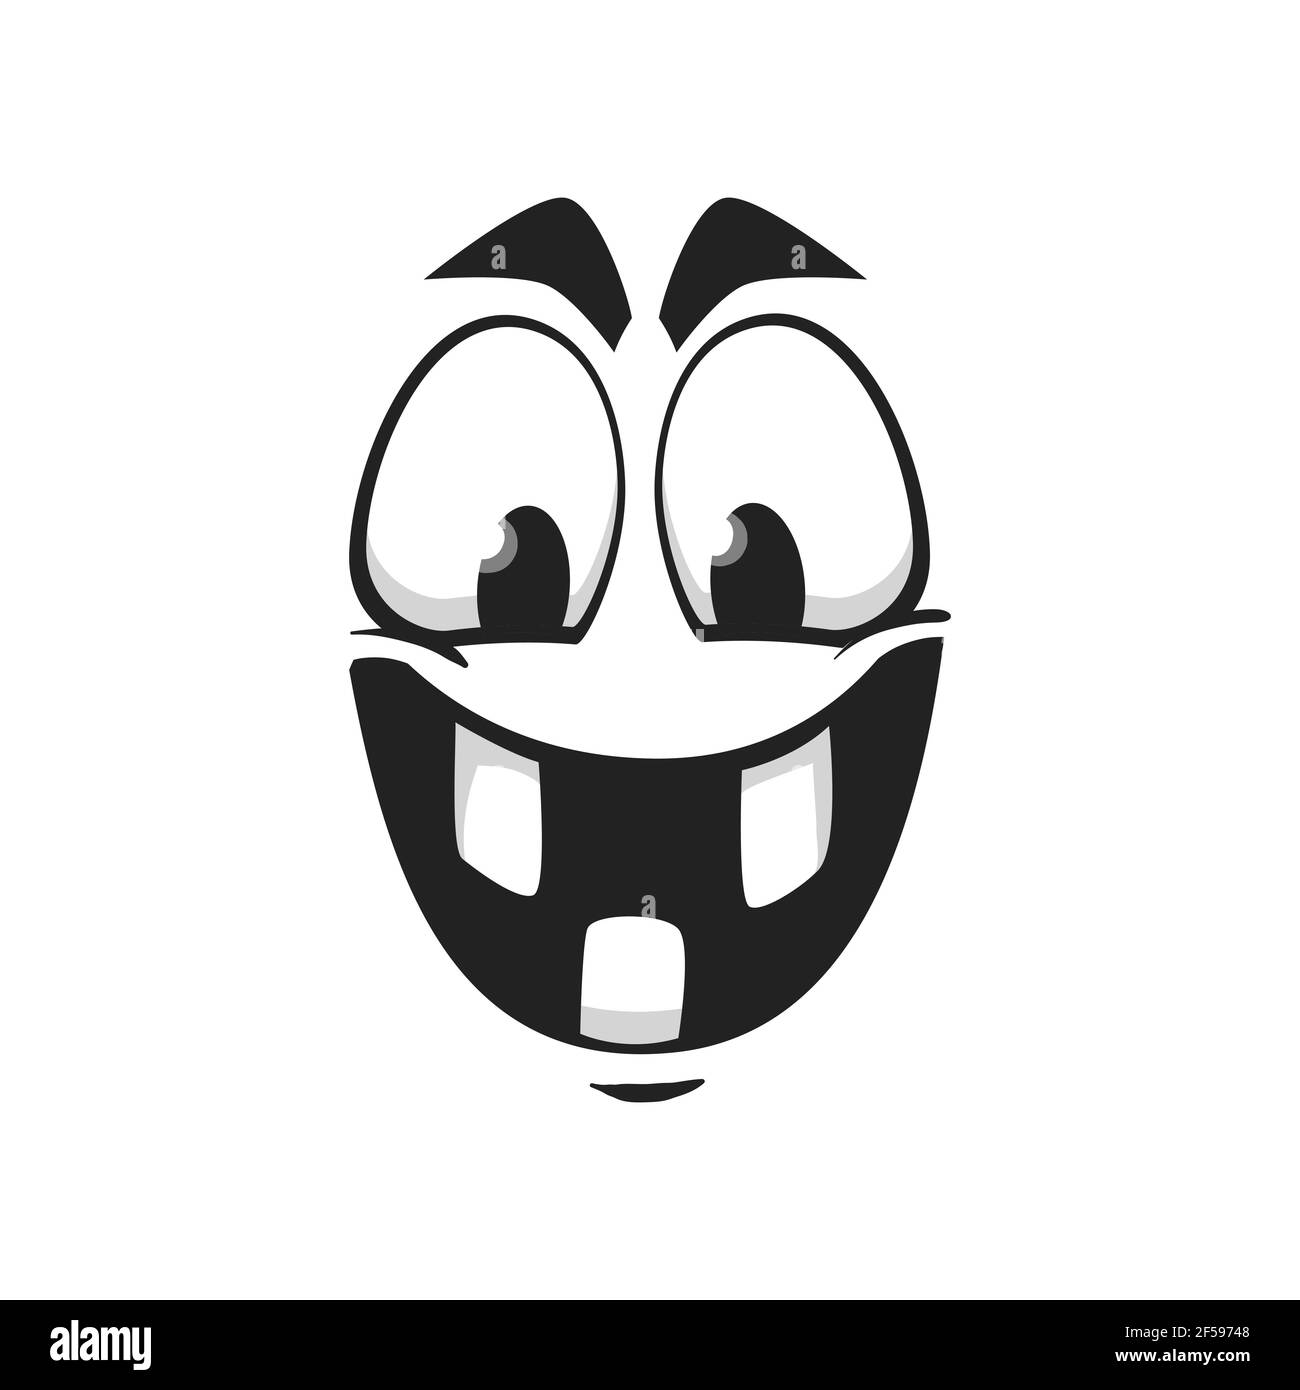 Cartoon face vector icon, happy laughing emoji Stock Vector